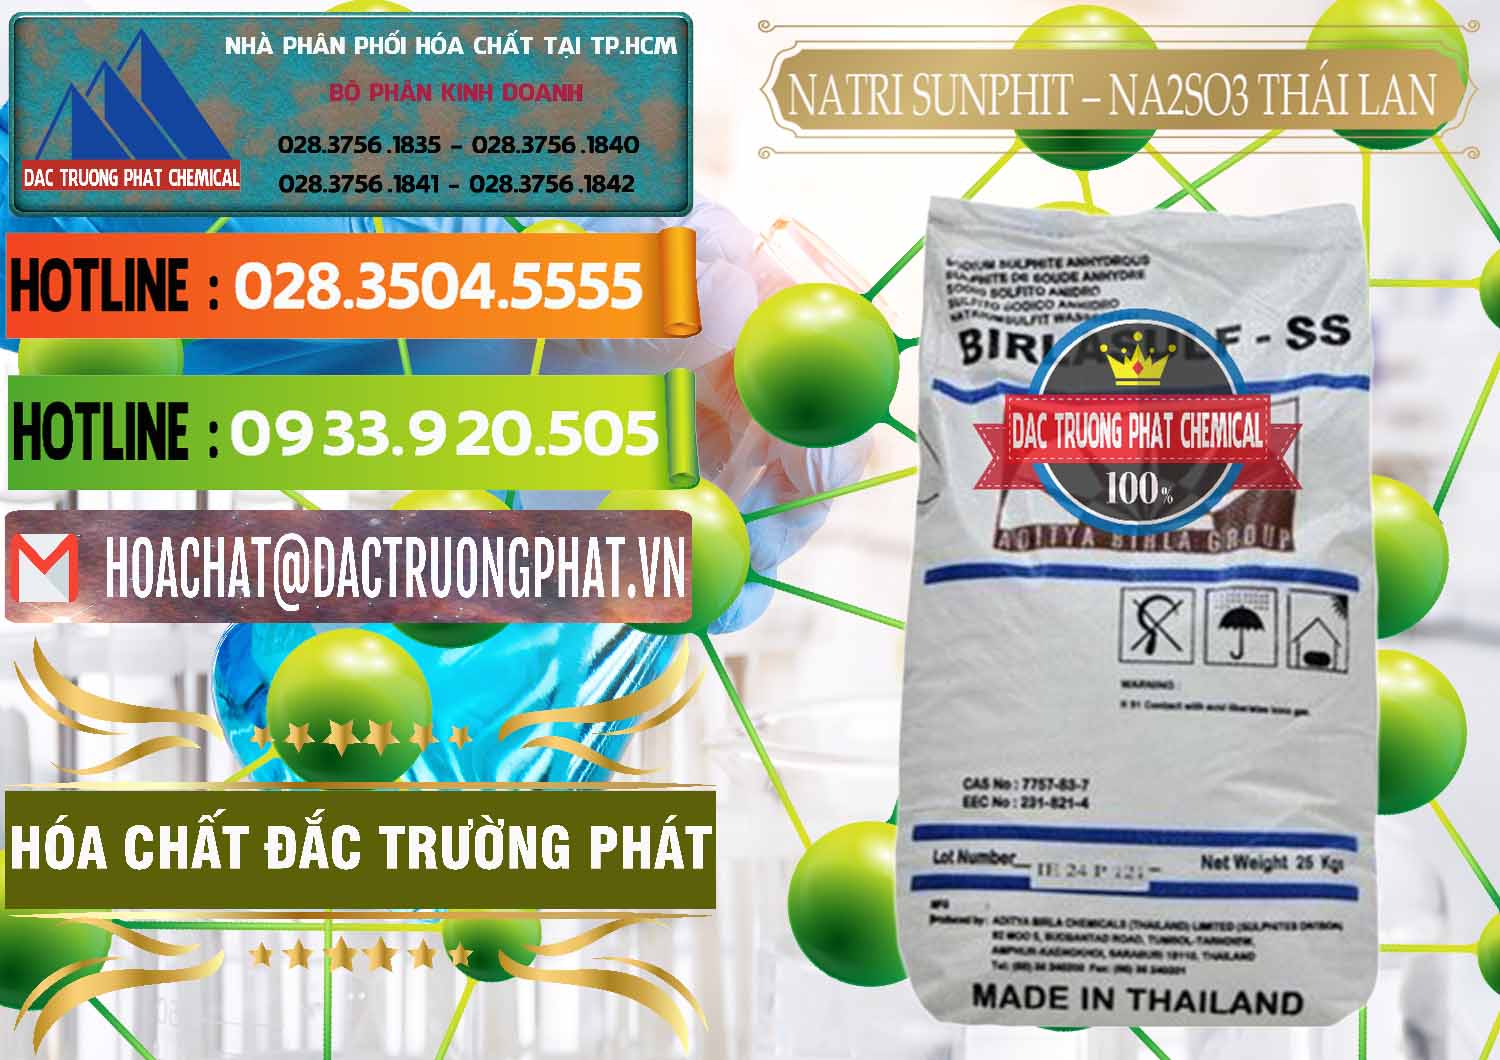 Đơn vị chuyên phân phối & bán Natri Sunphit - NA2SO3 Thái Lan - 0105 - Công ty phân phối & cung ứng hóa chất tại TP.HCM - cungcaphoachat.com.vn